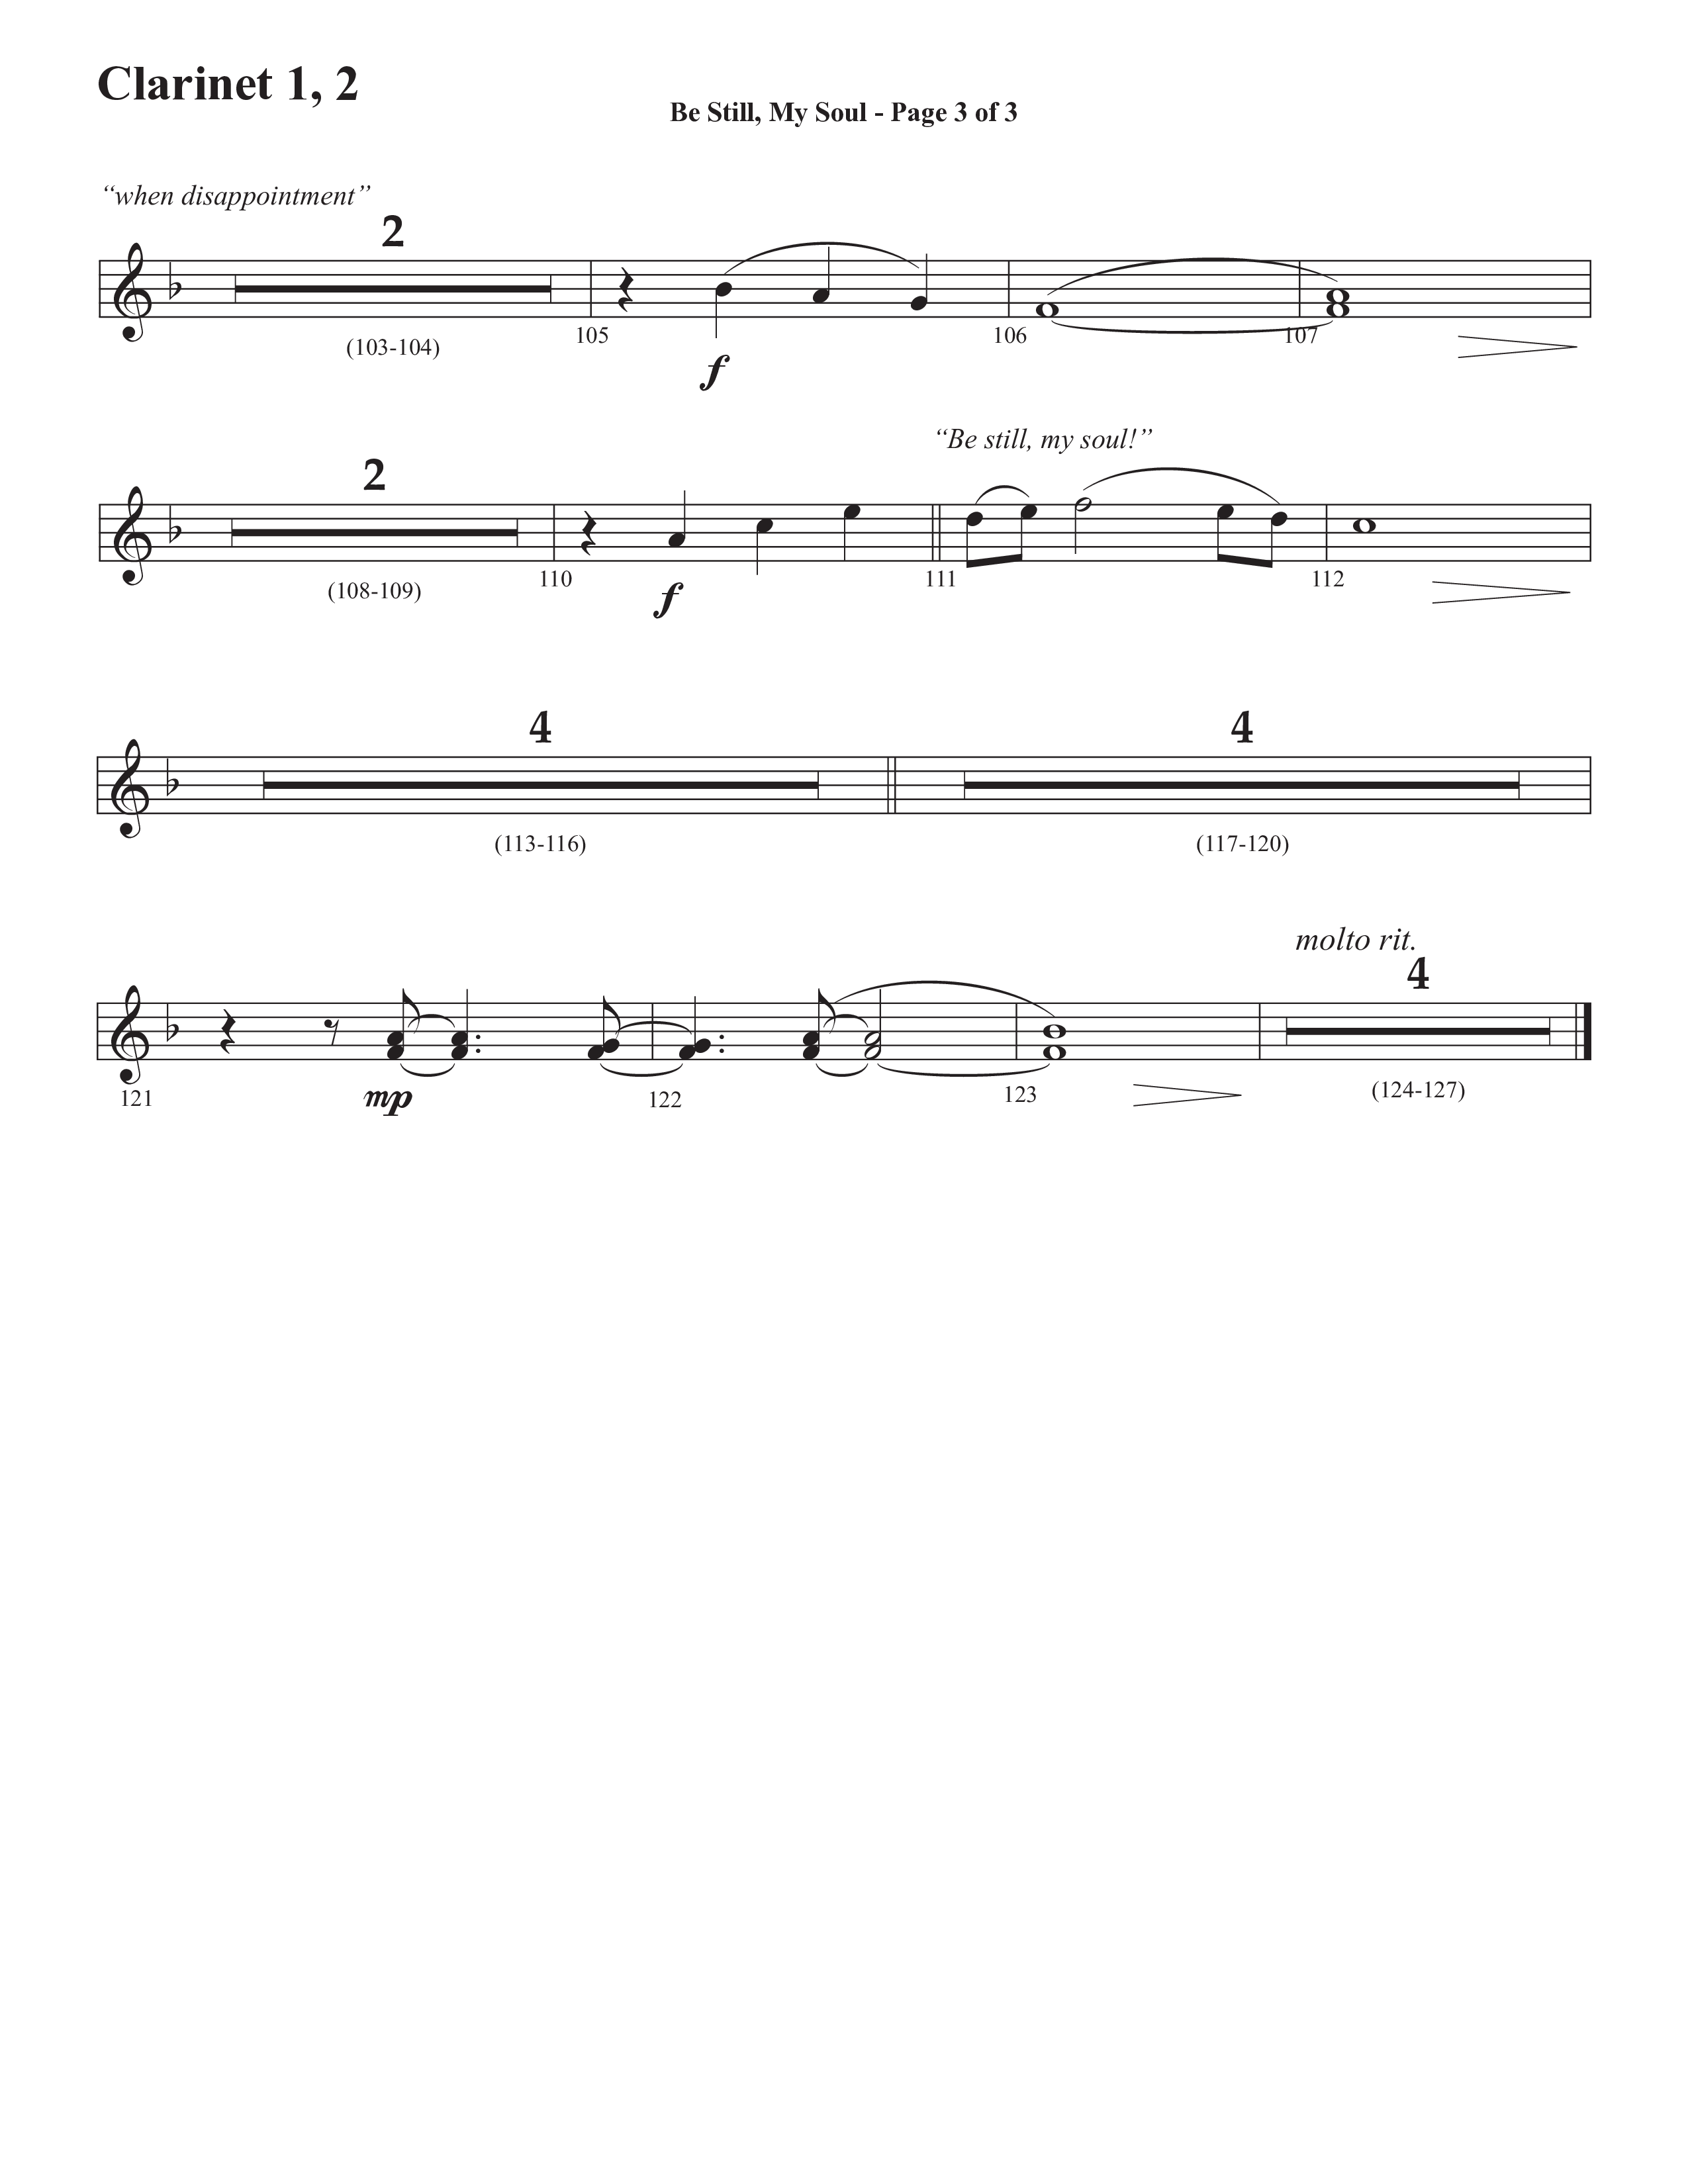 Be Still My Soul (Choral Anthem SATB) Clarinet 1/2 (Semsen Music / Arr. Cliff Duren)